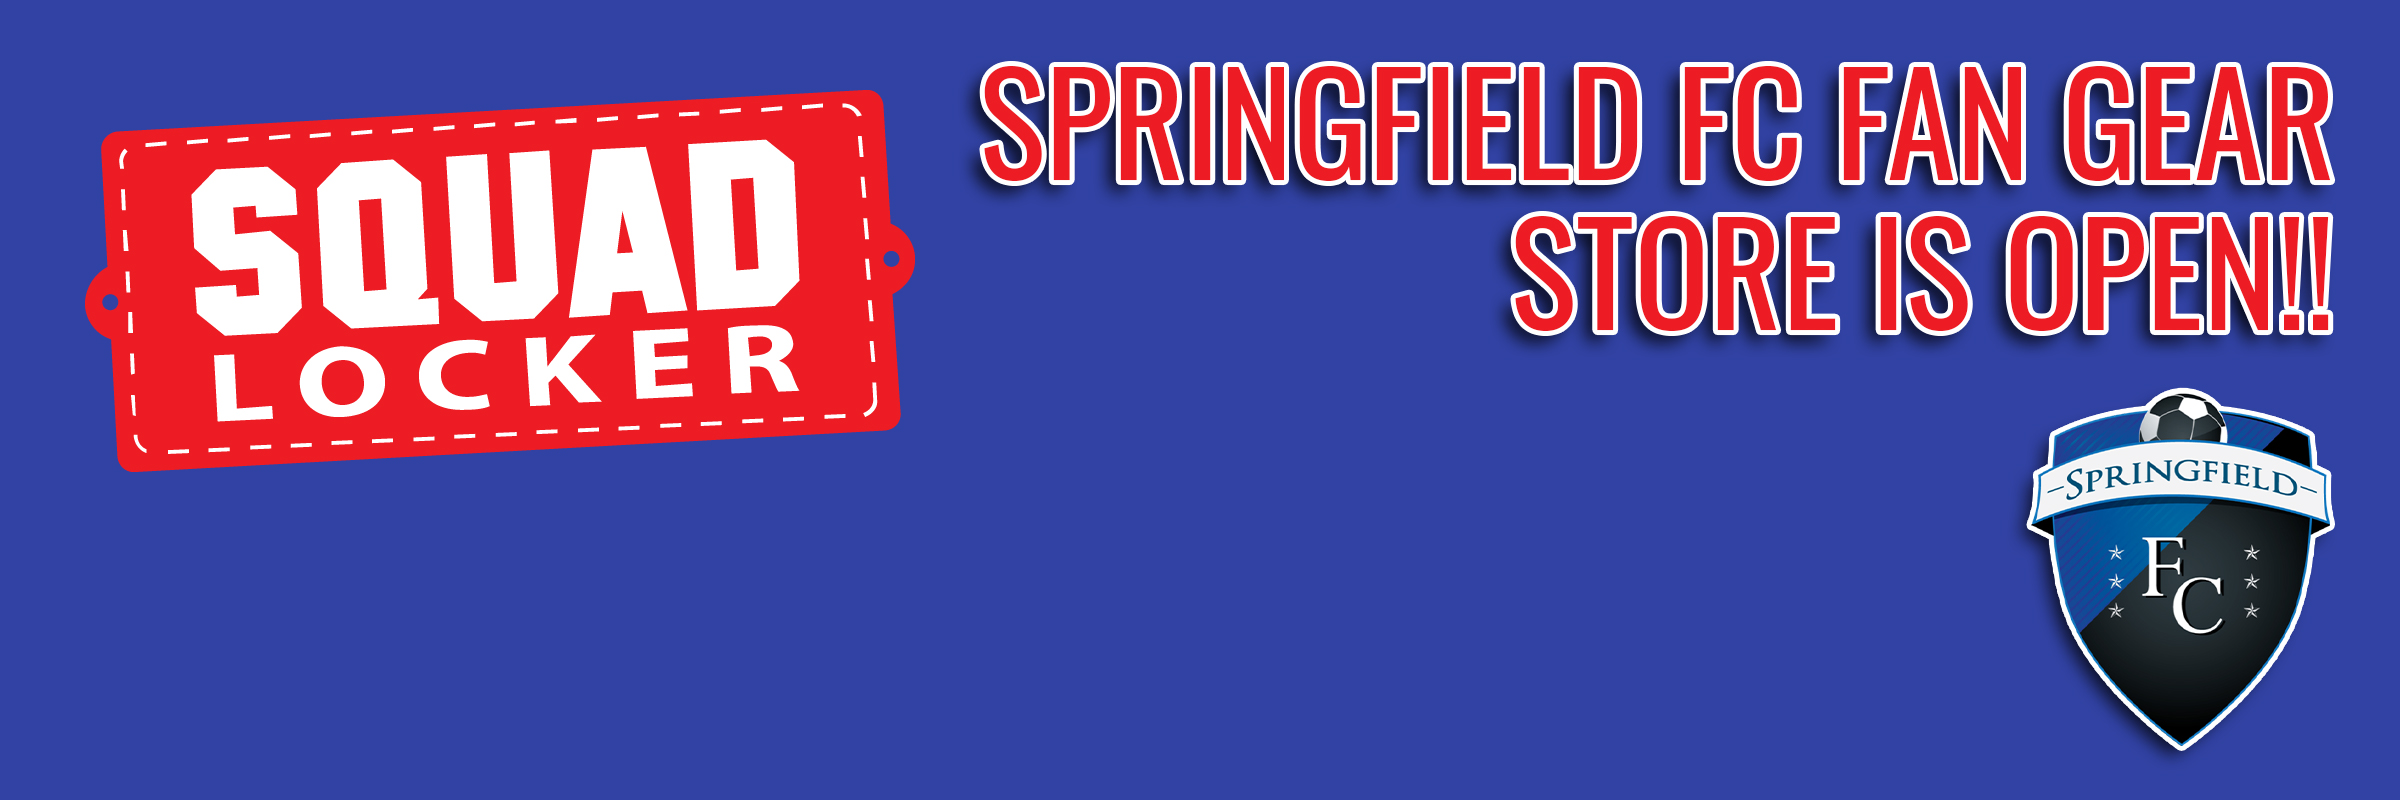 SPRINGFIELD FC FAN GEAR IS AVAILABLE 24/7/365